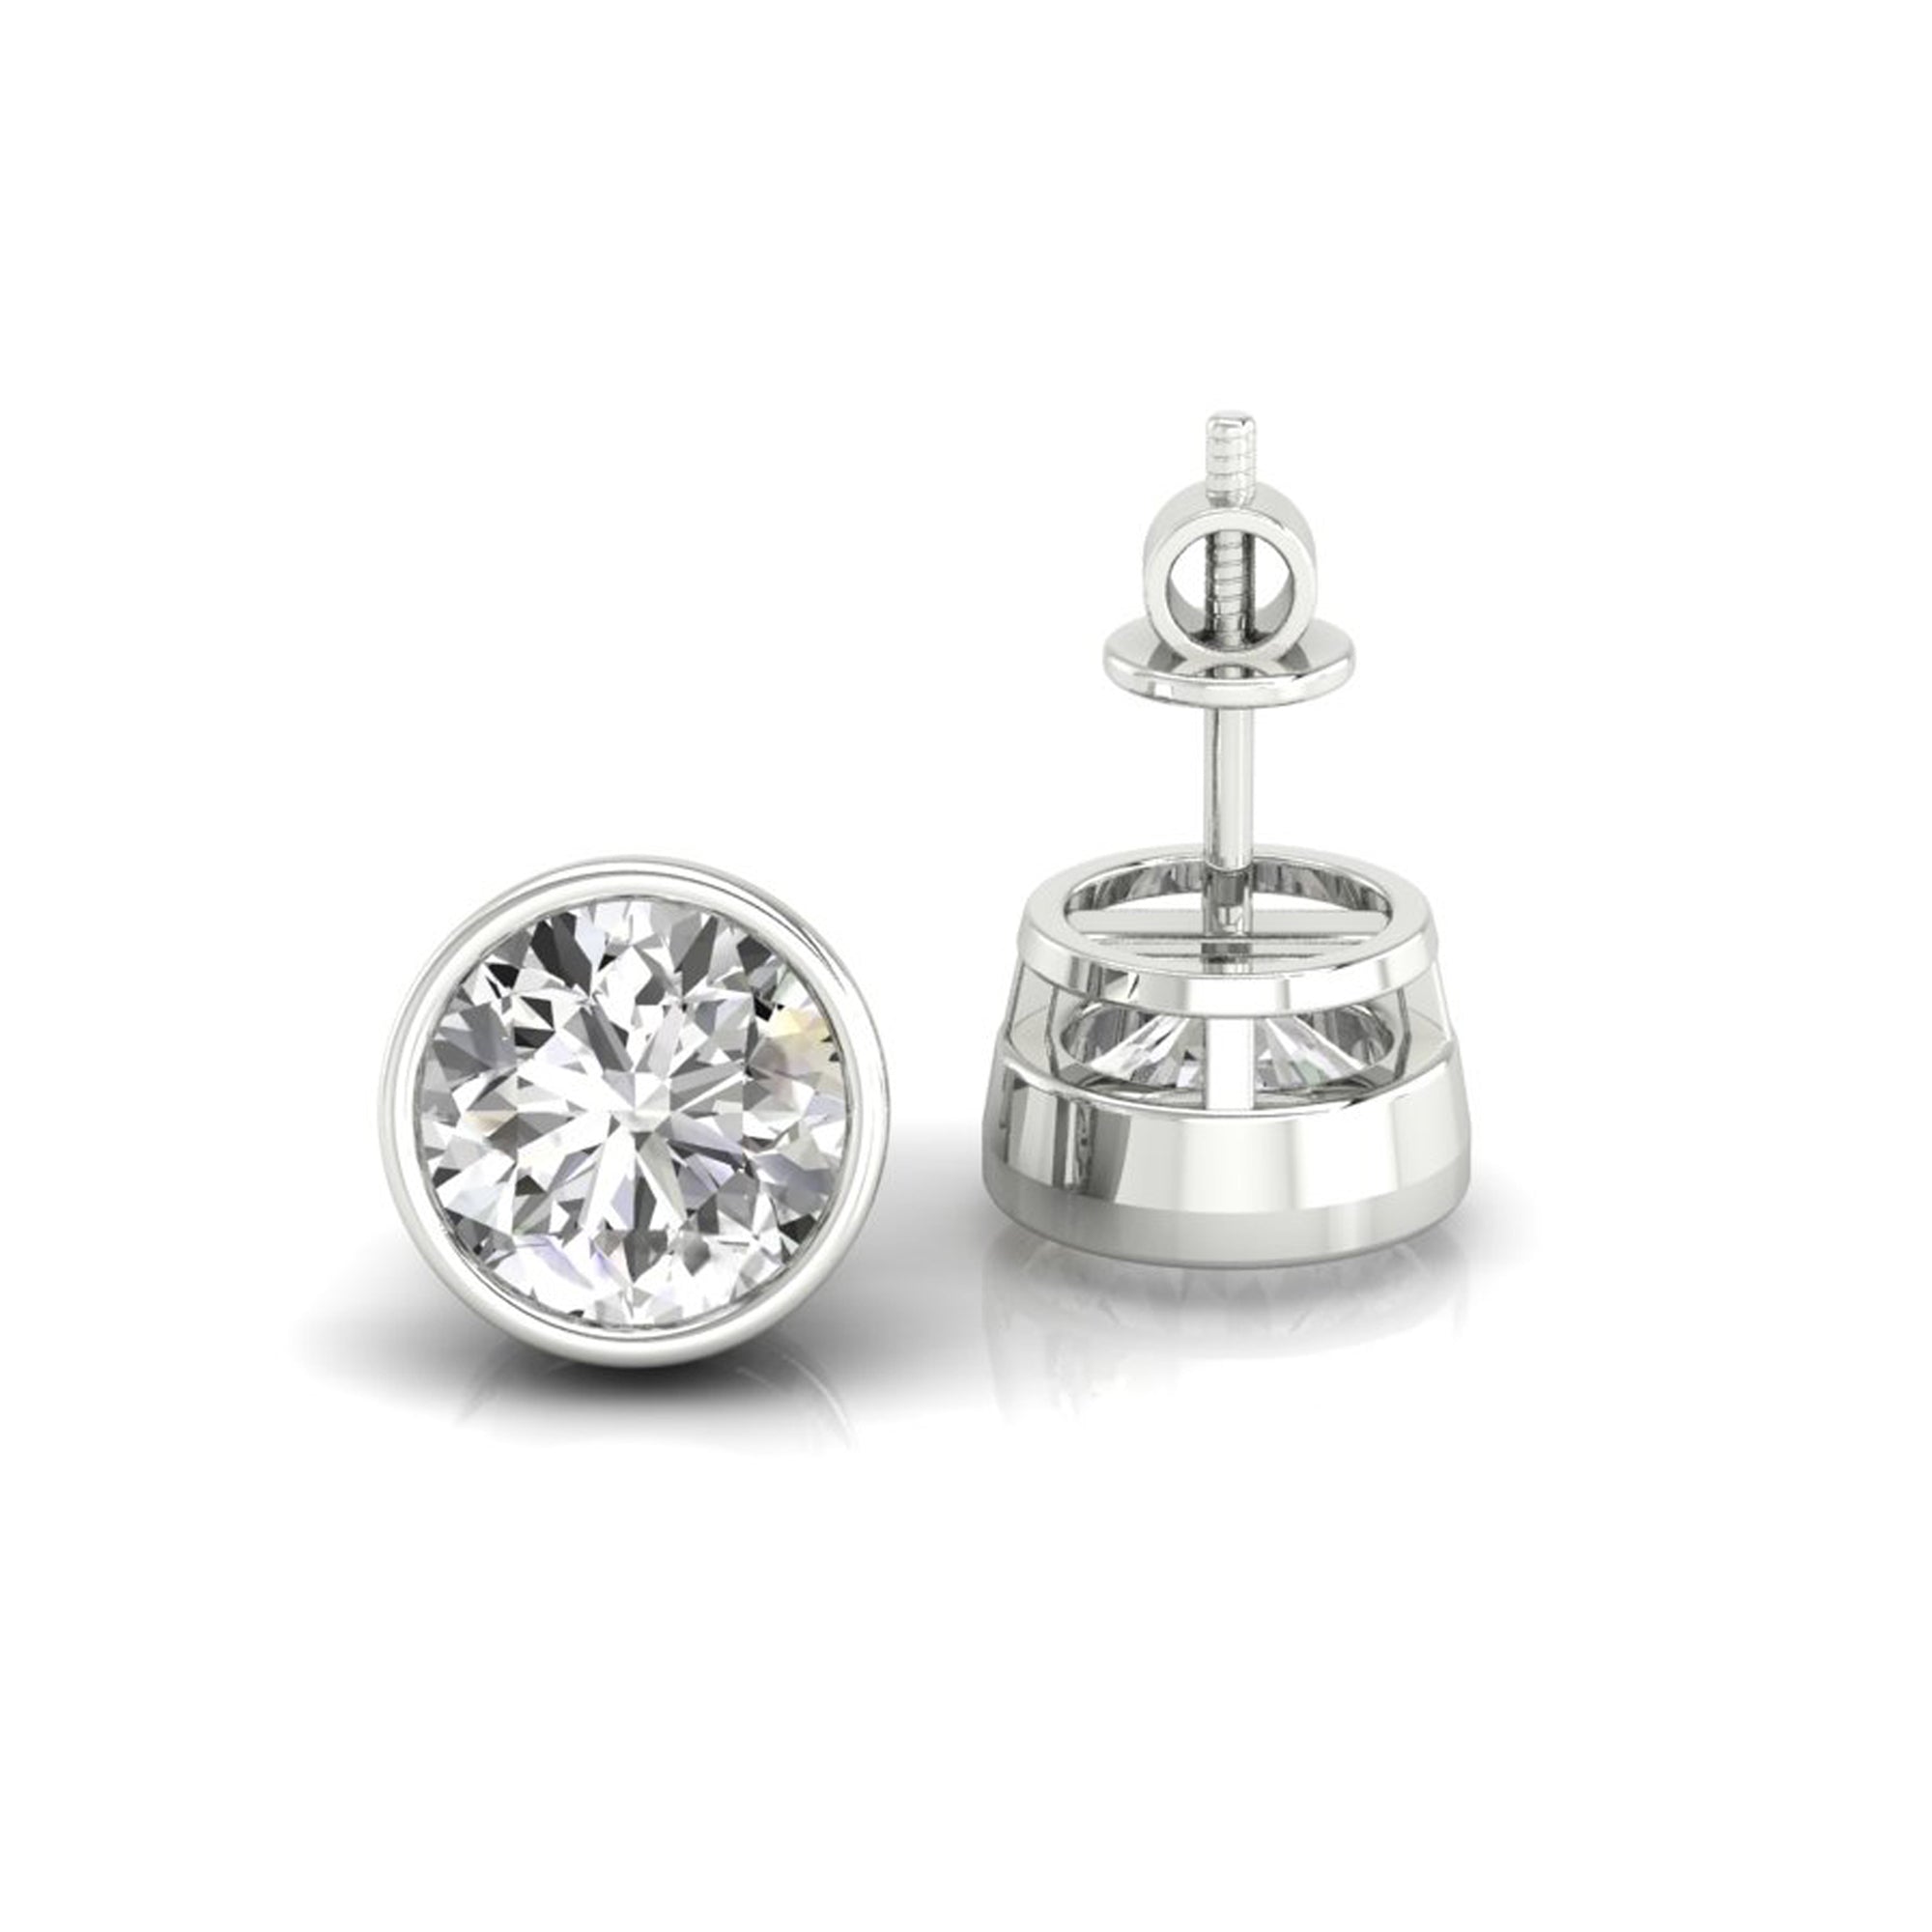 moissanite wedding earrings - diamondrensu